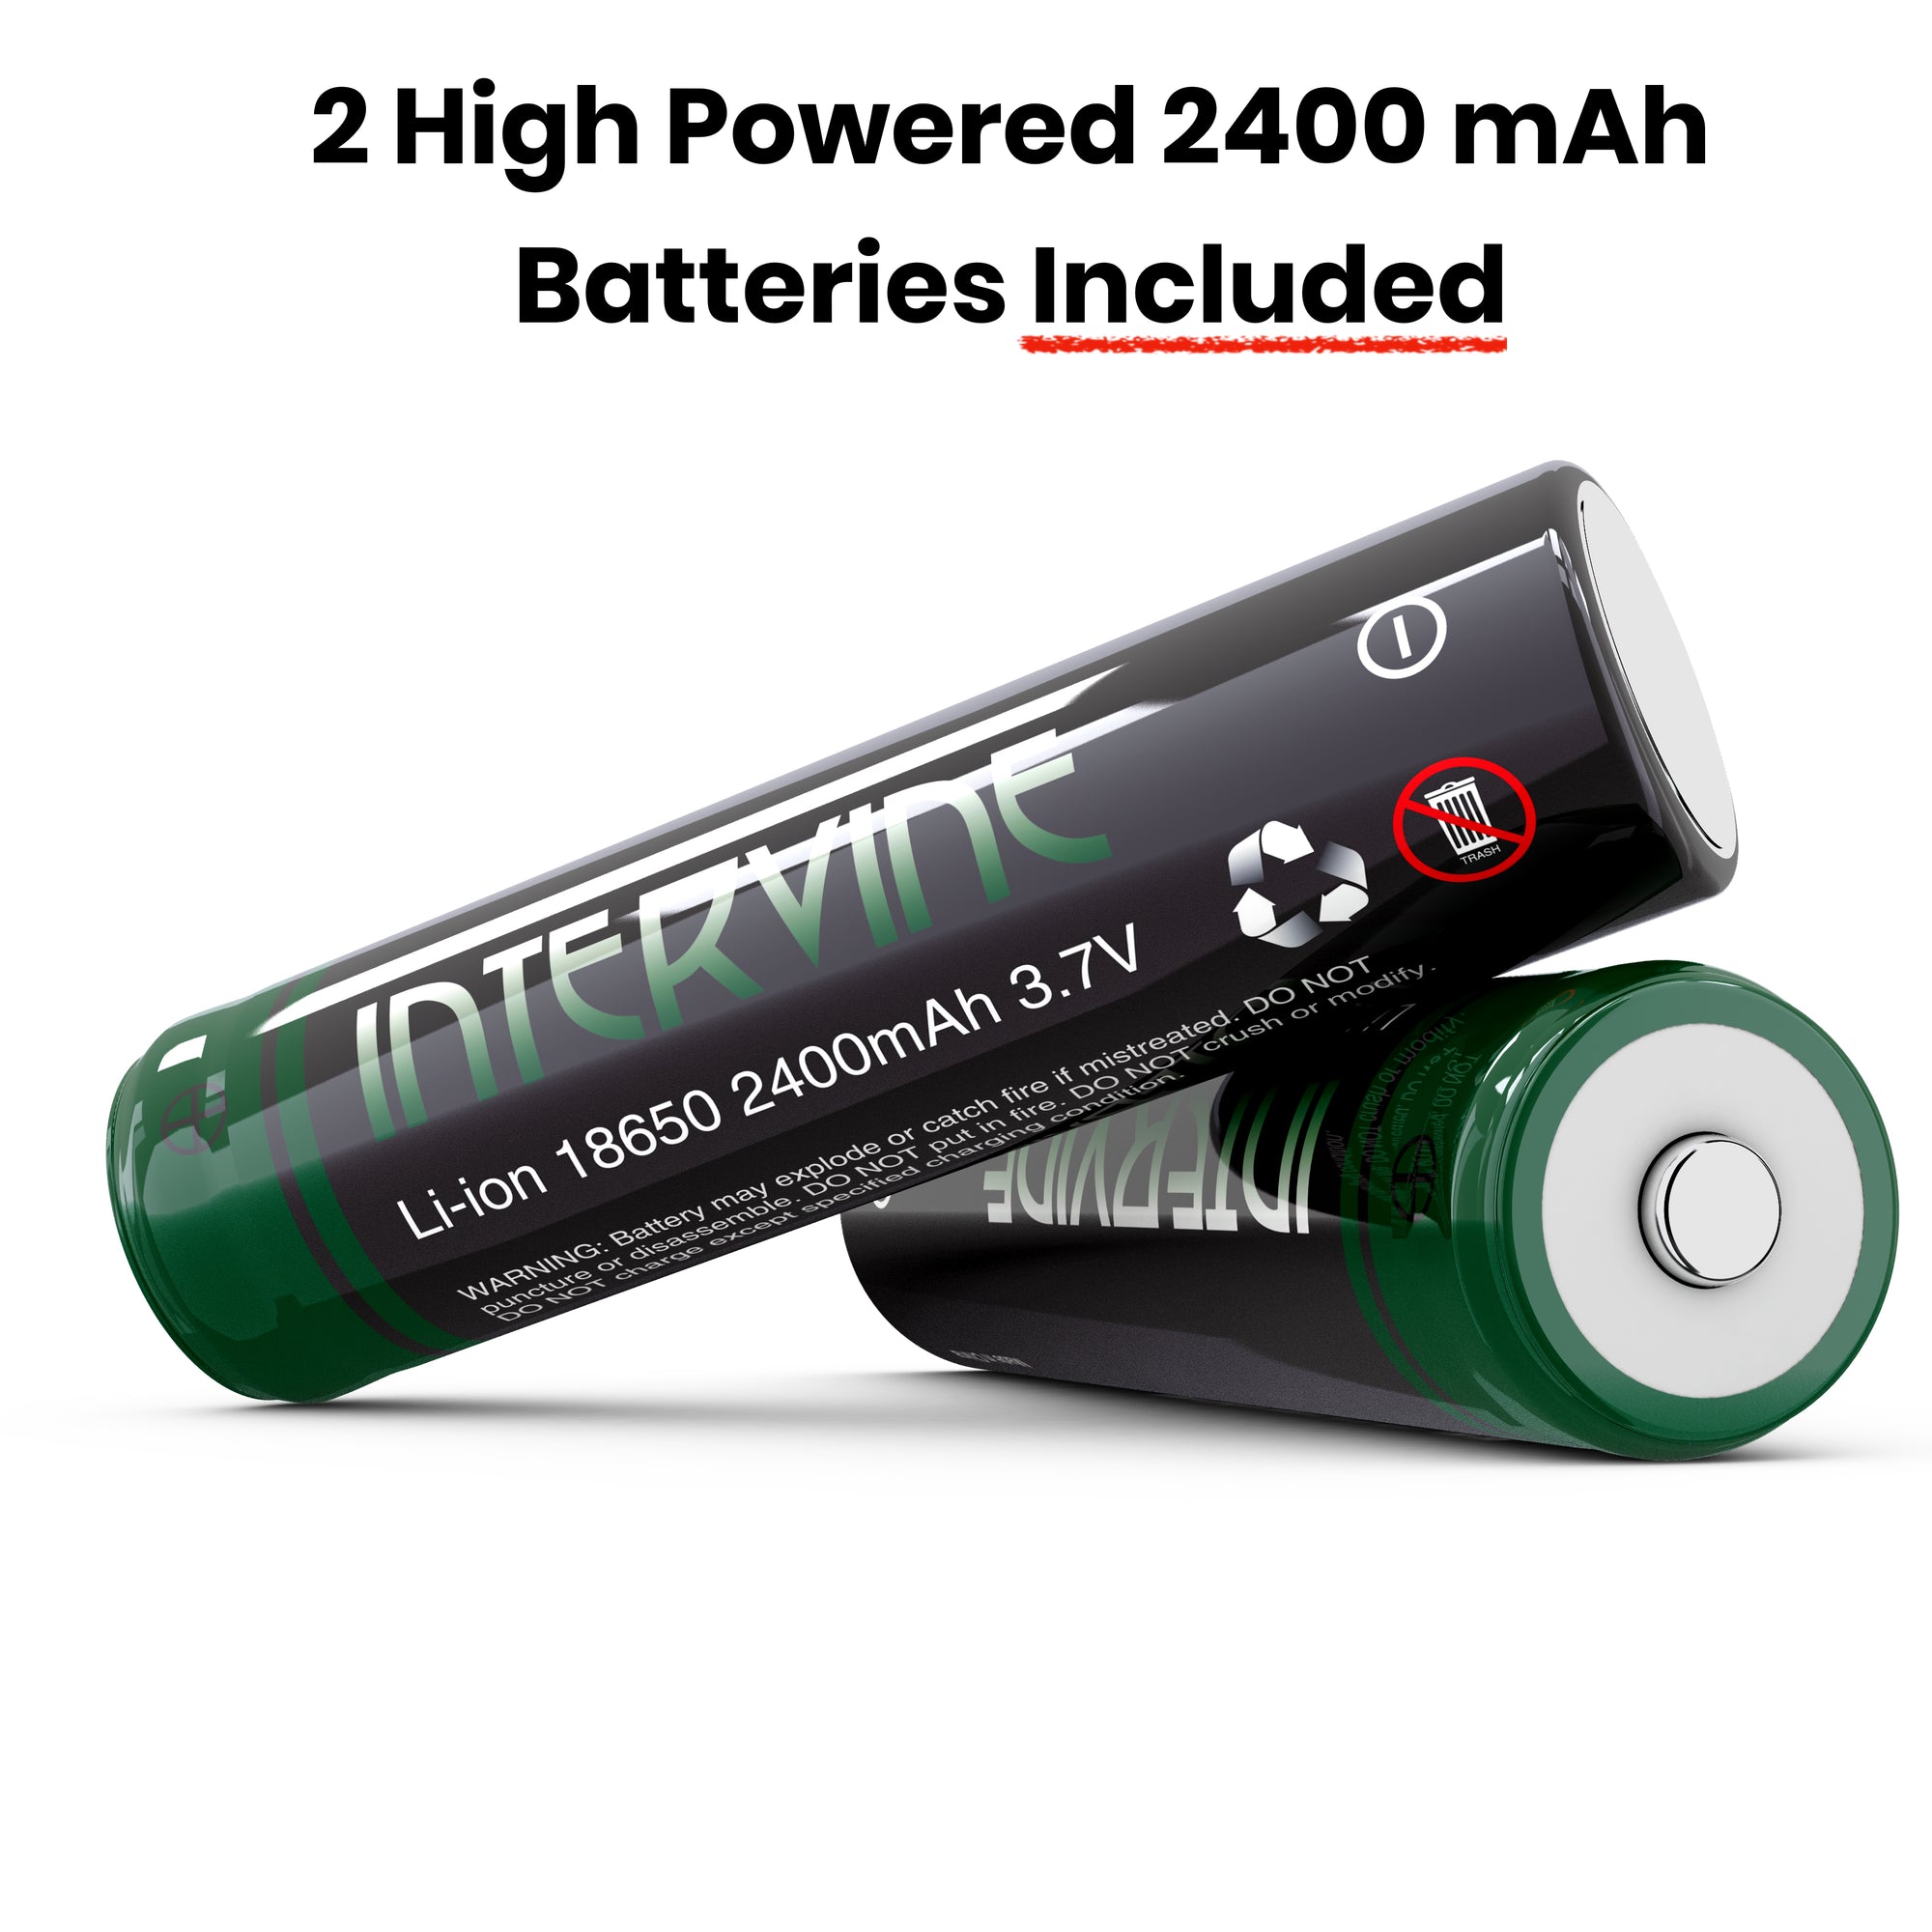 Battery Double Batteries 18650  Double Rechargeable Batteries